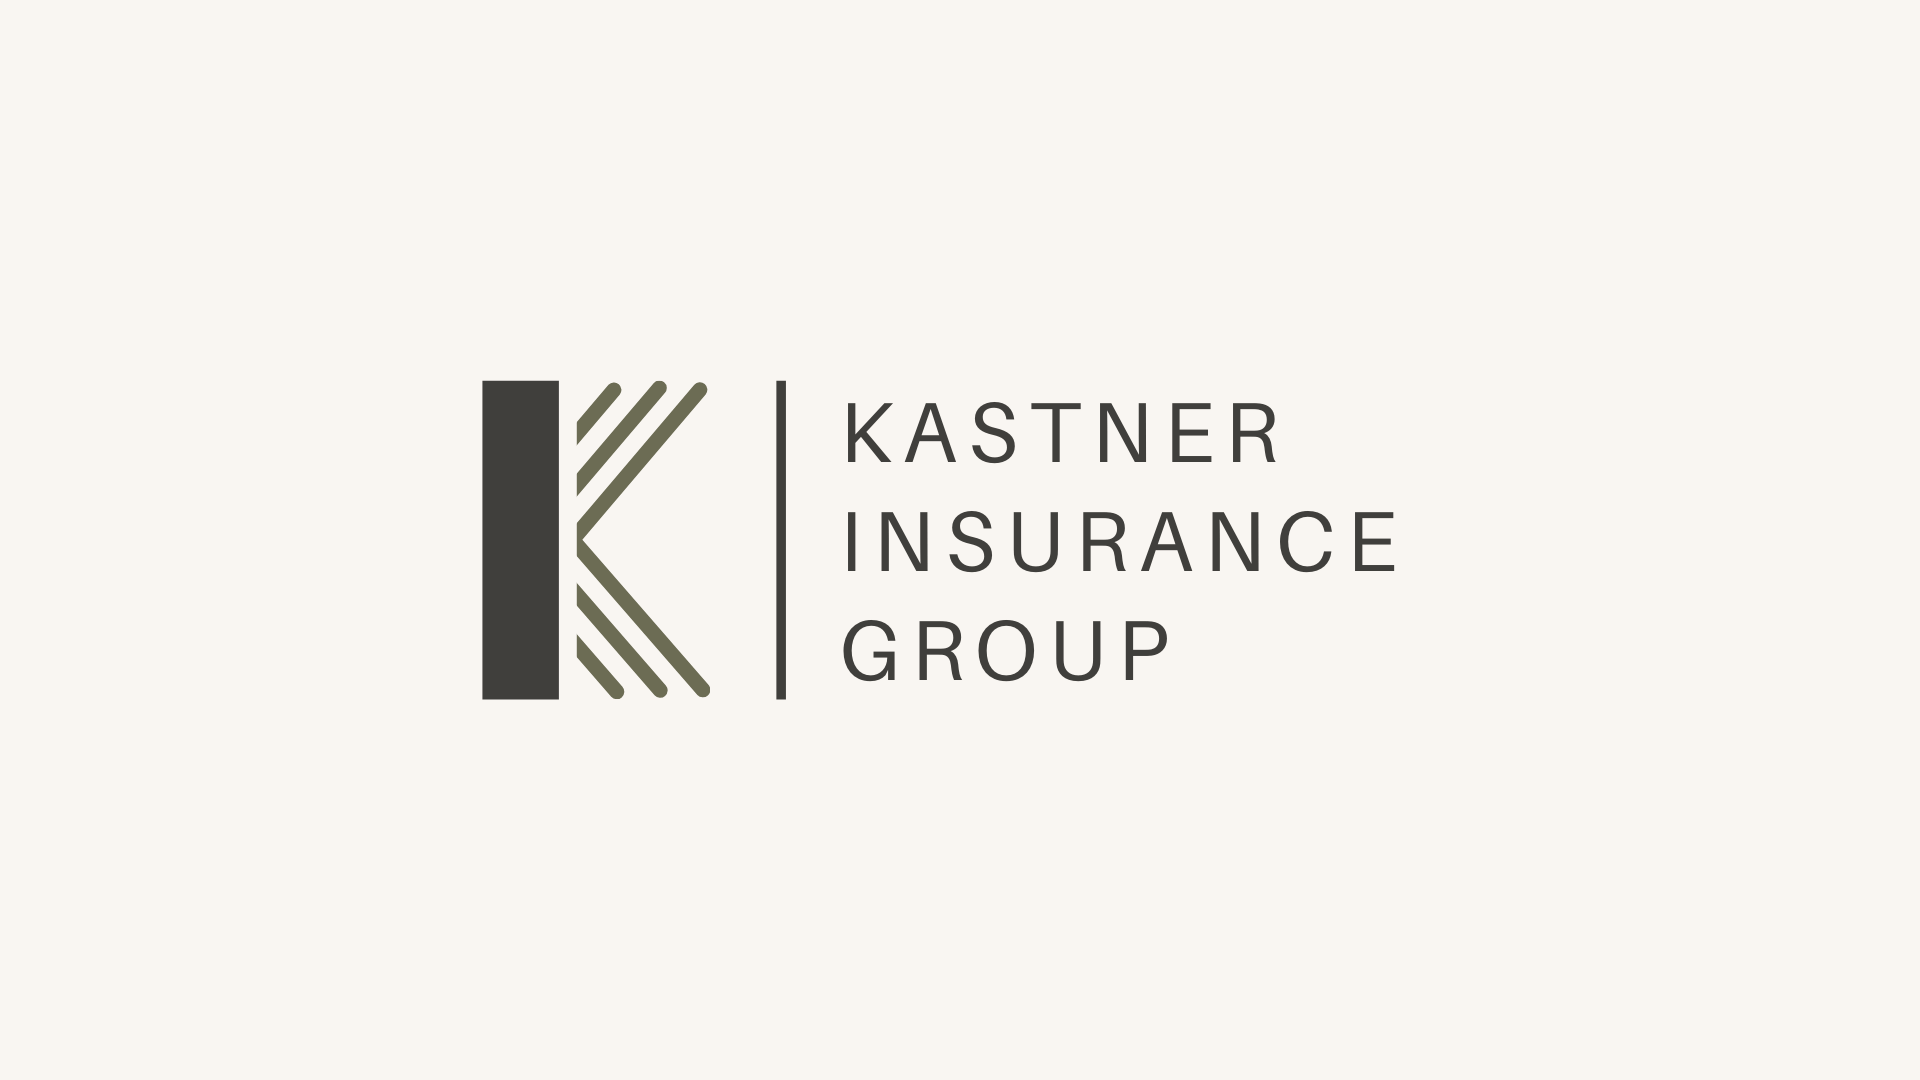 Brand Guidelines - Kastner Insurance Group